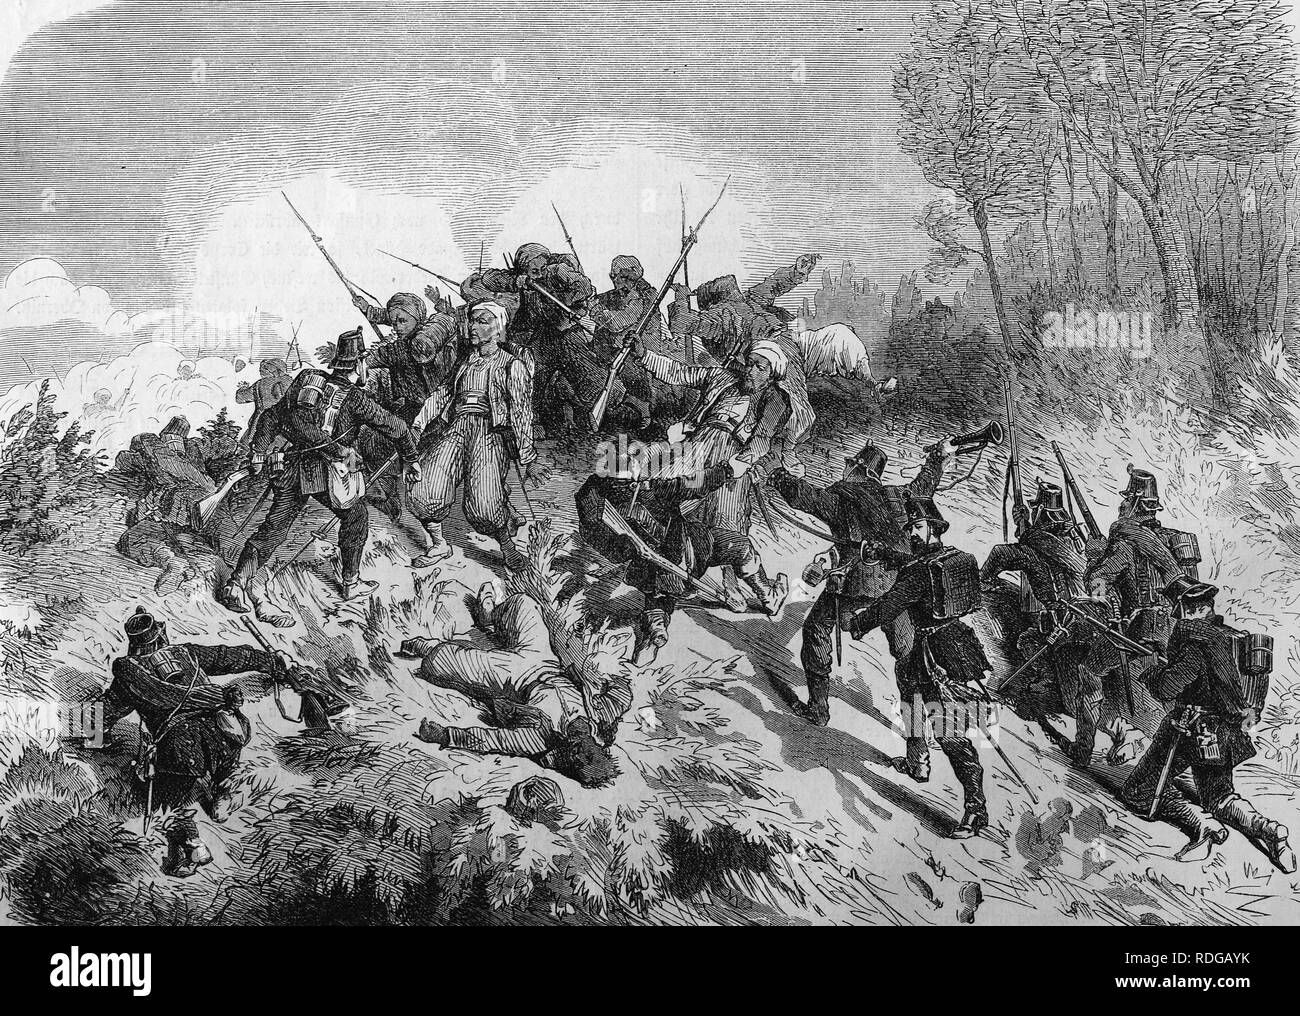 Turros von Norden deutsche Soldaten in der Nähe von Wörth, historische Darstellung erfasst, illustrierte Krieg Chronik 1870 bis 1871 Stockfoto